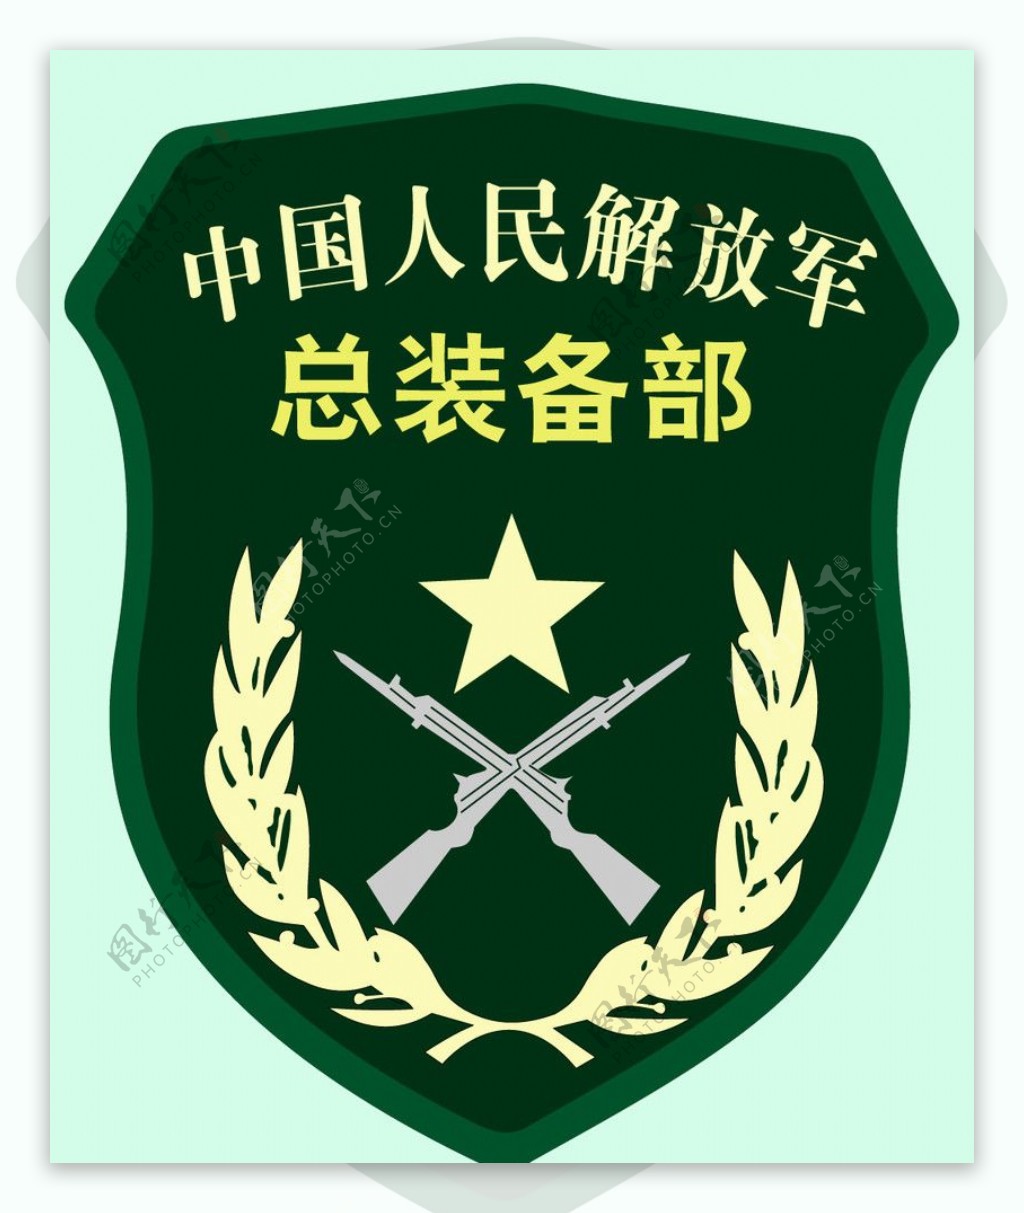 中国人民解放军总装备部标识图片